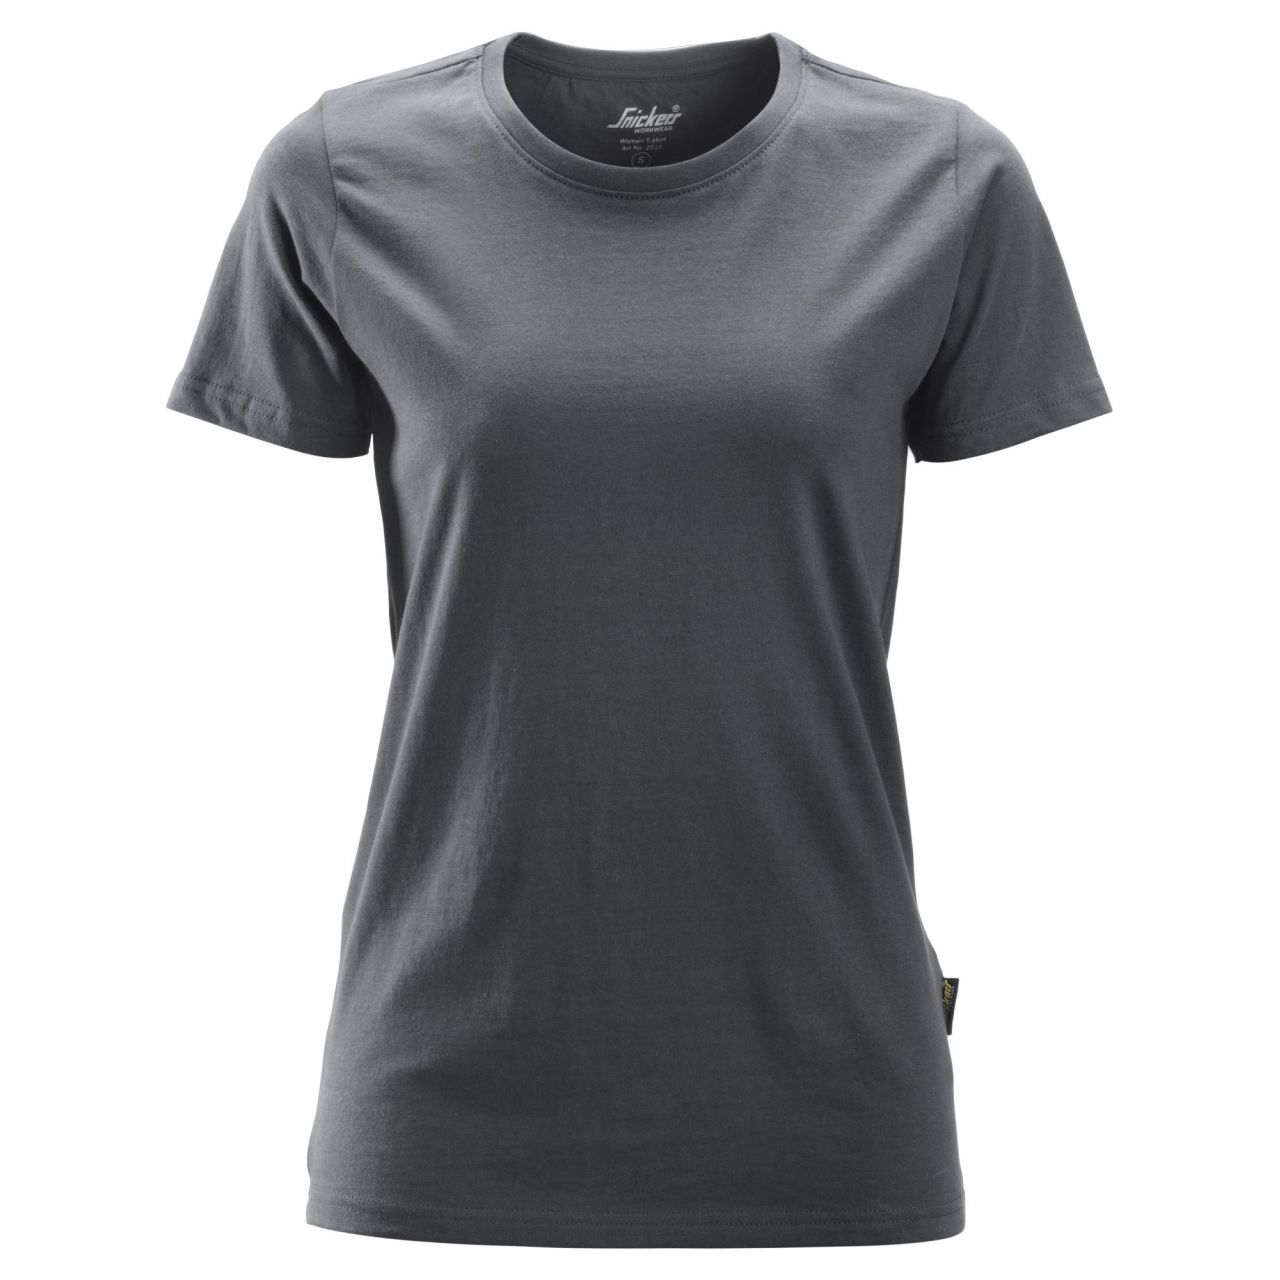 2516 Camiseta Mujer gris acero talla M